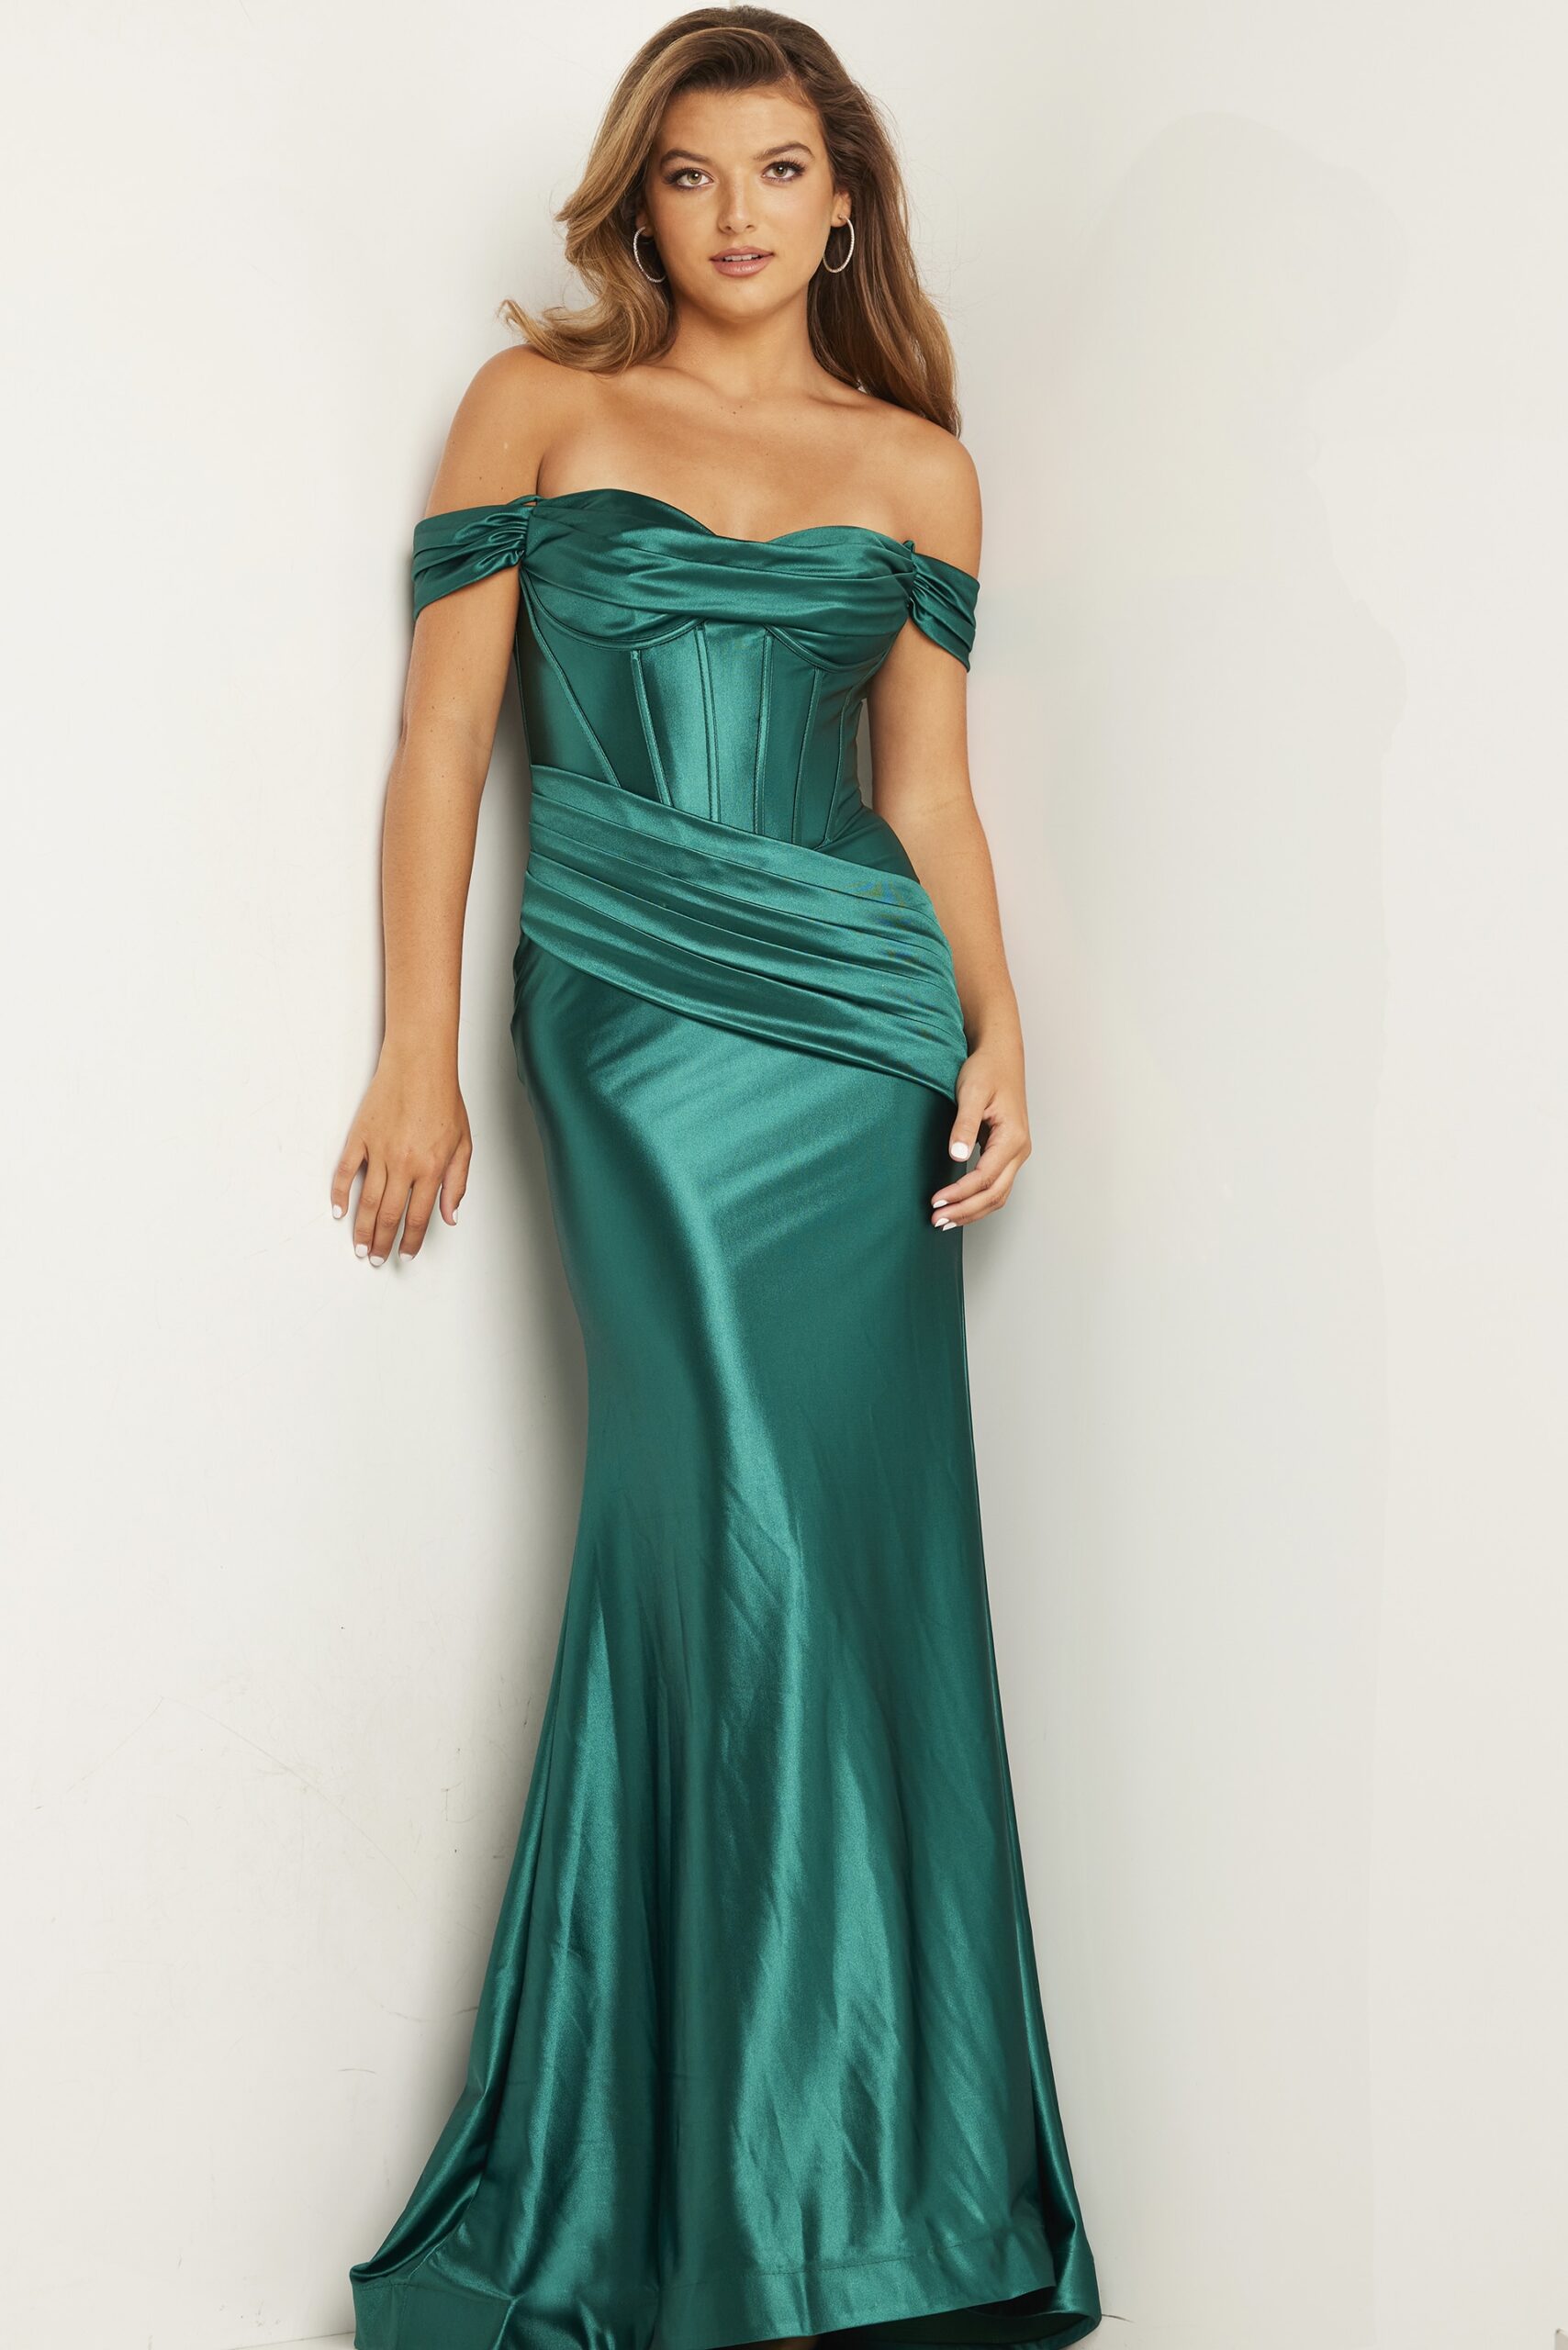 Model wearing Emerald Off the Shoulder Dress 37521